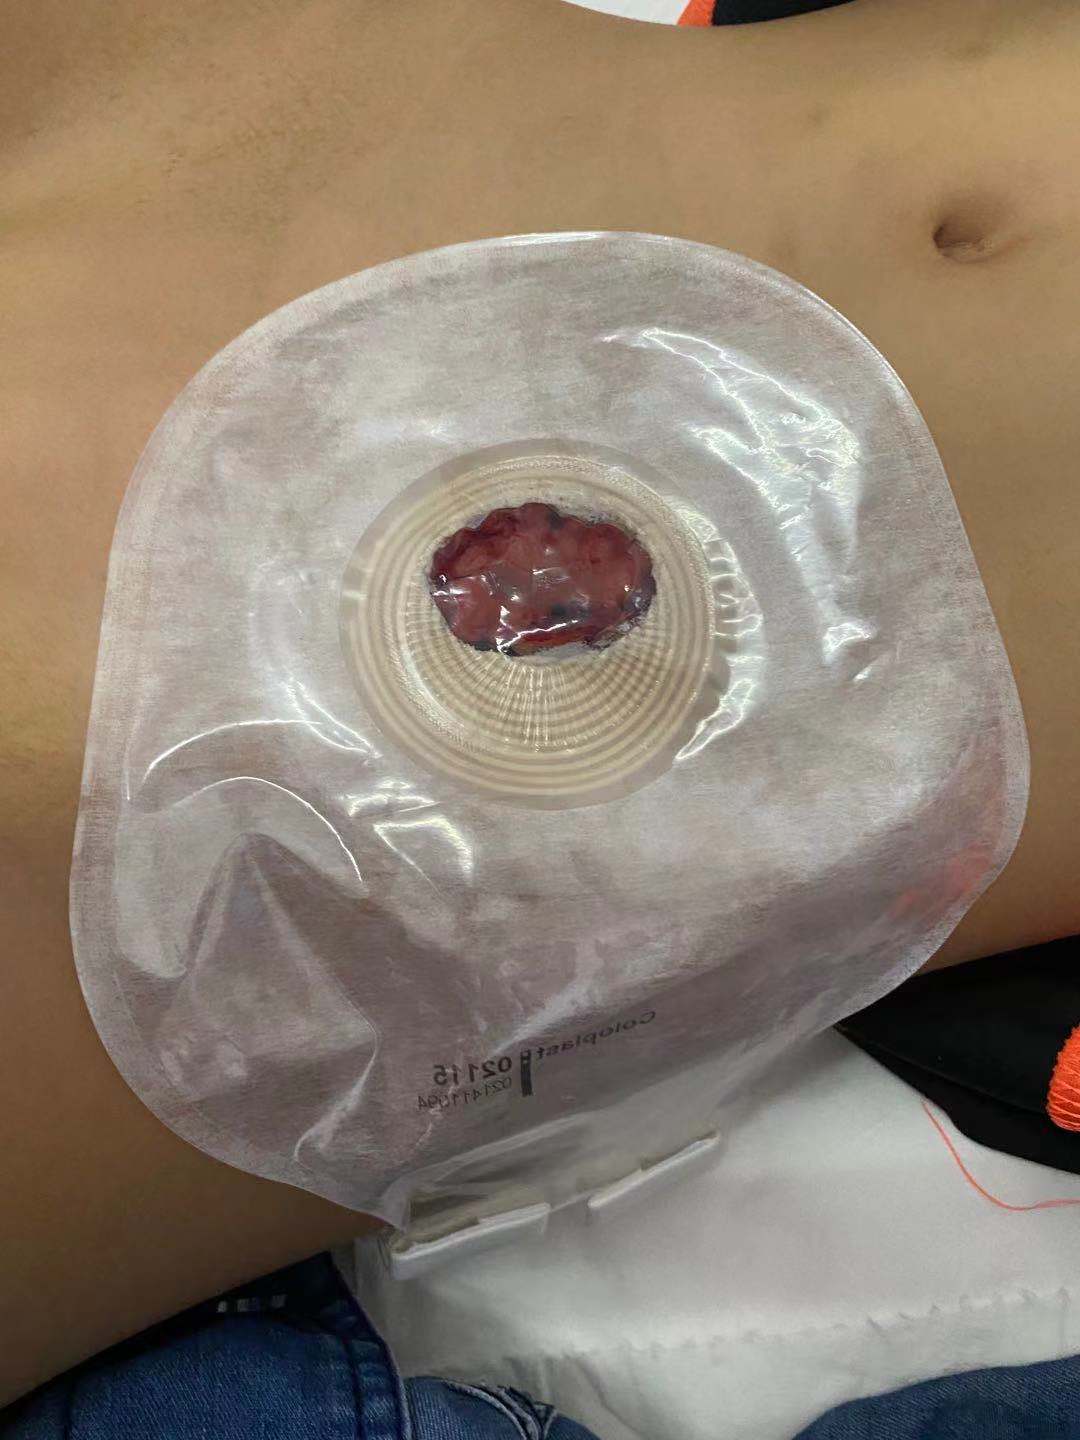 女娃下河戏水屁股被竹签桩插中，江西省儿童医院为其紧急手术重塑肛门、会阴